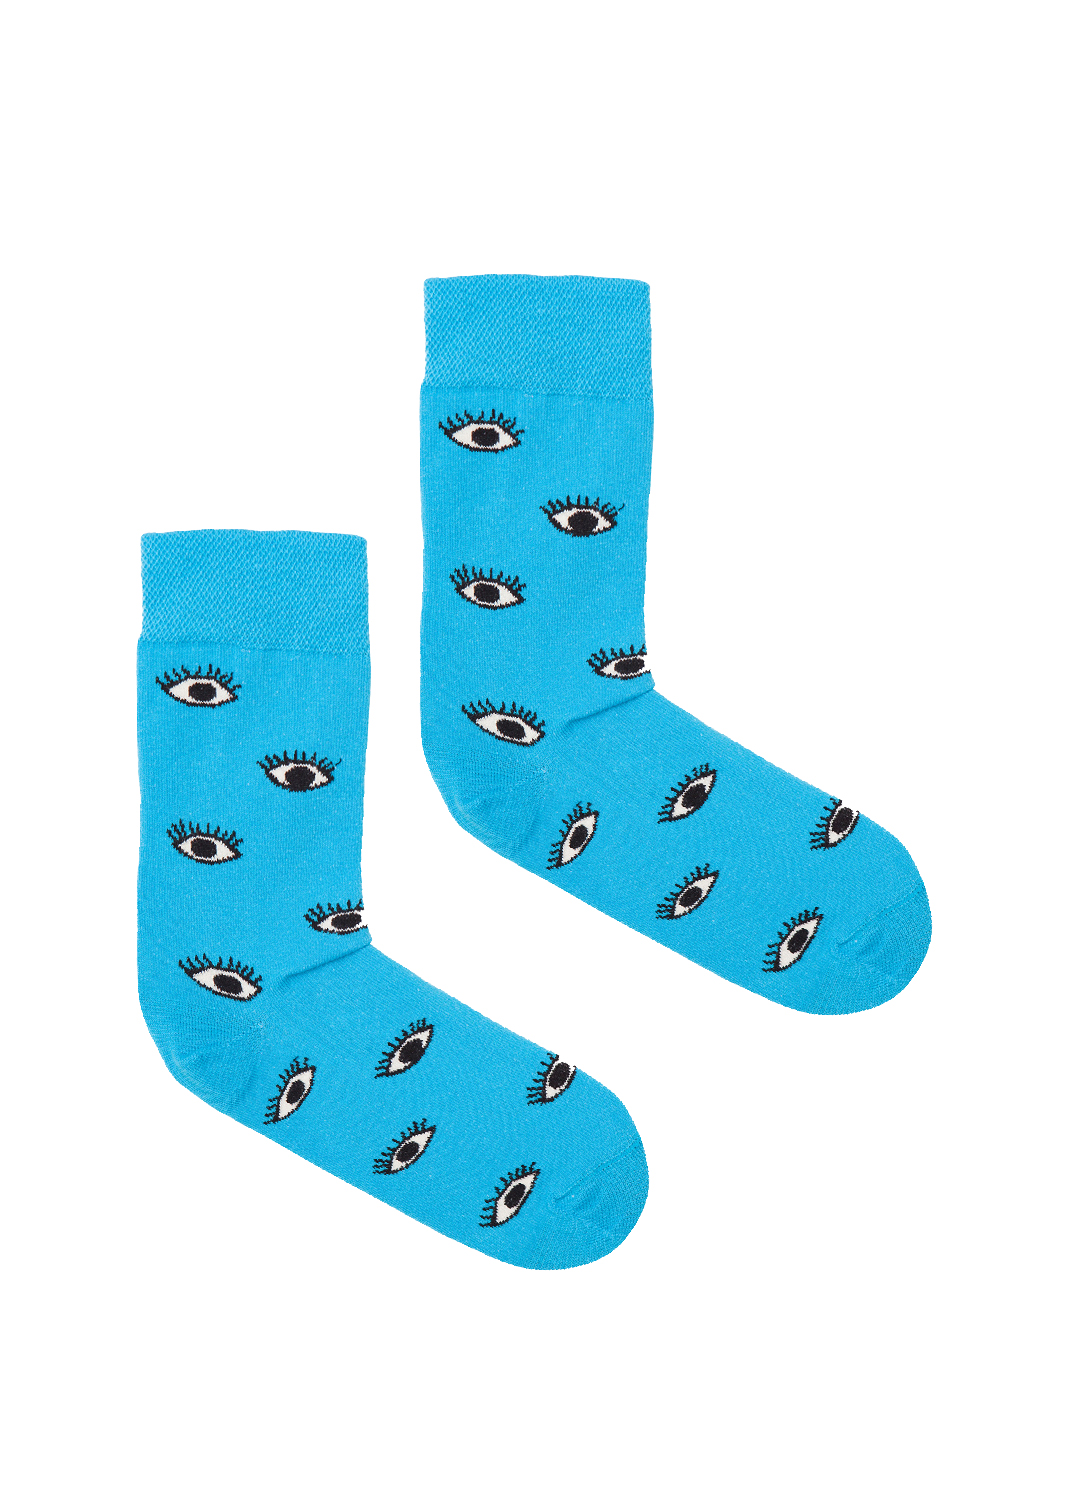 Levně Kabak Unisex's Socks Patterned Blue Eyes